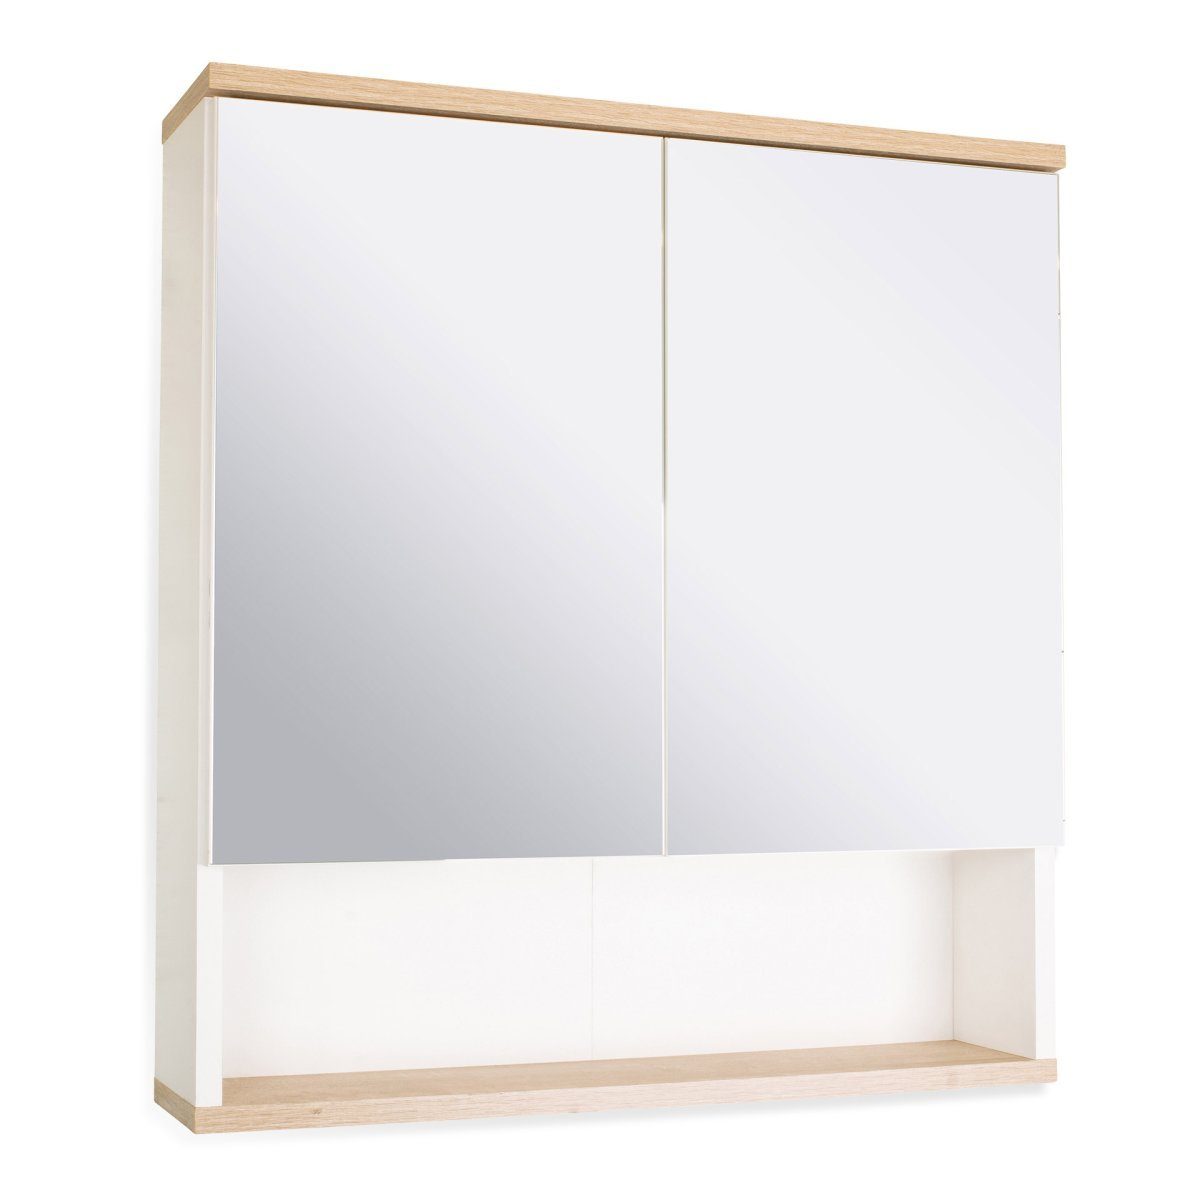 BADEDU Badezimmerspiegelschrank »BadeDu Arc Spiegelschrank mit extra  offenem Regal, Badschrank mit viel Stauraum und 2 Einl« online kaufen | OTTO